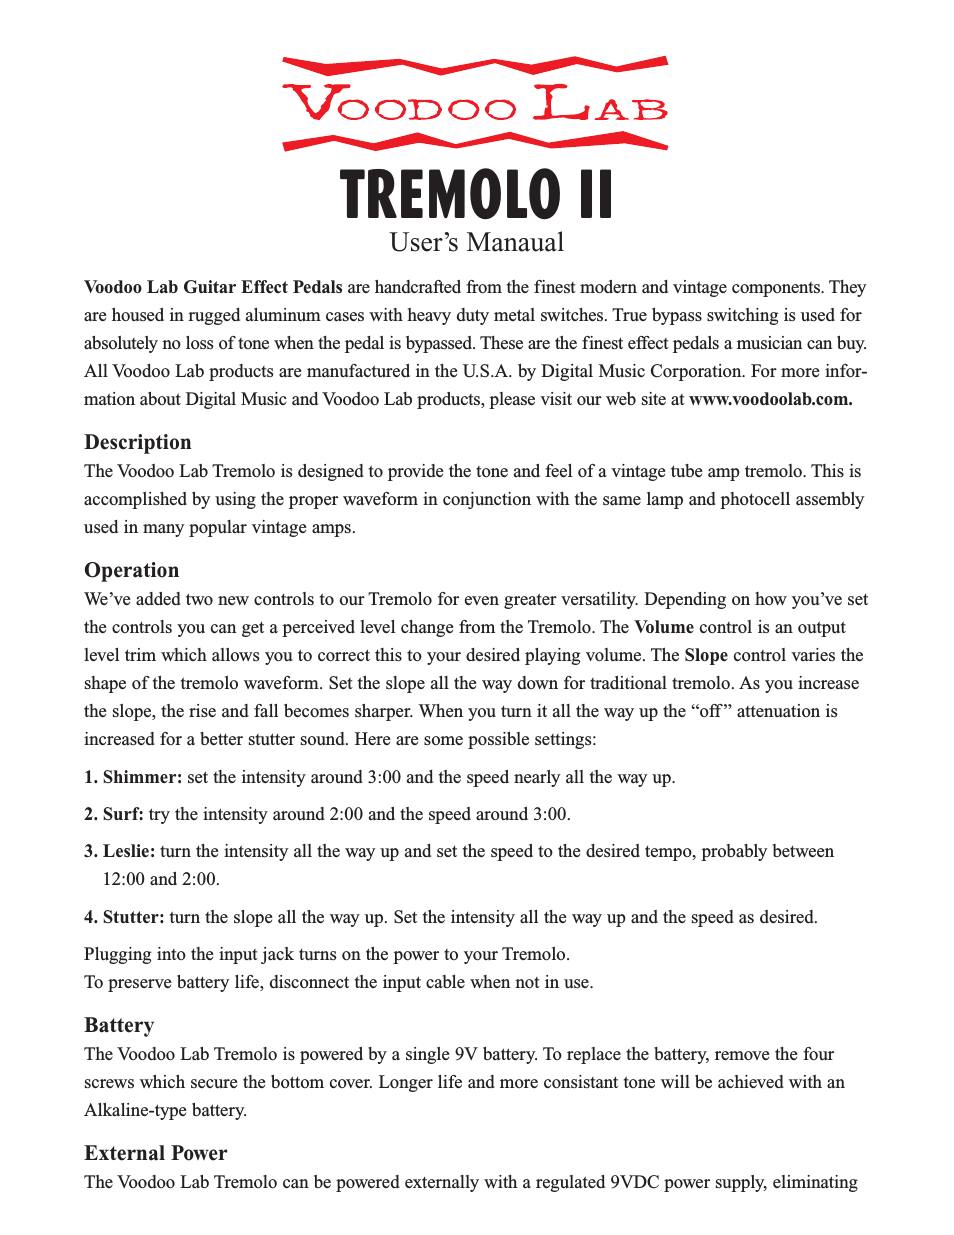 Tremolo II